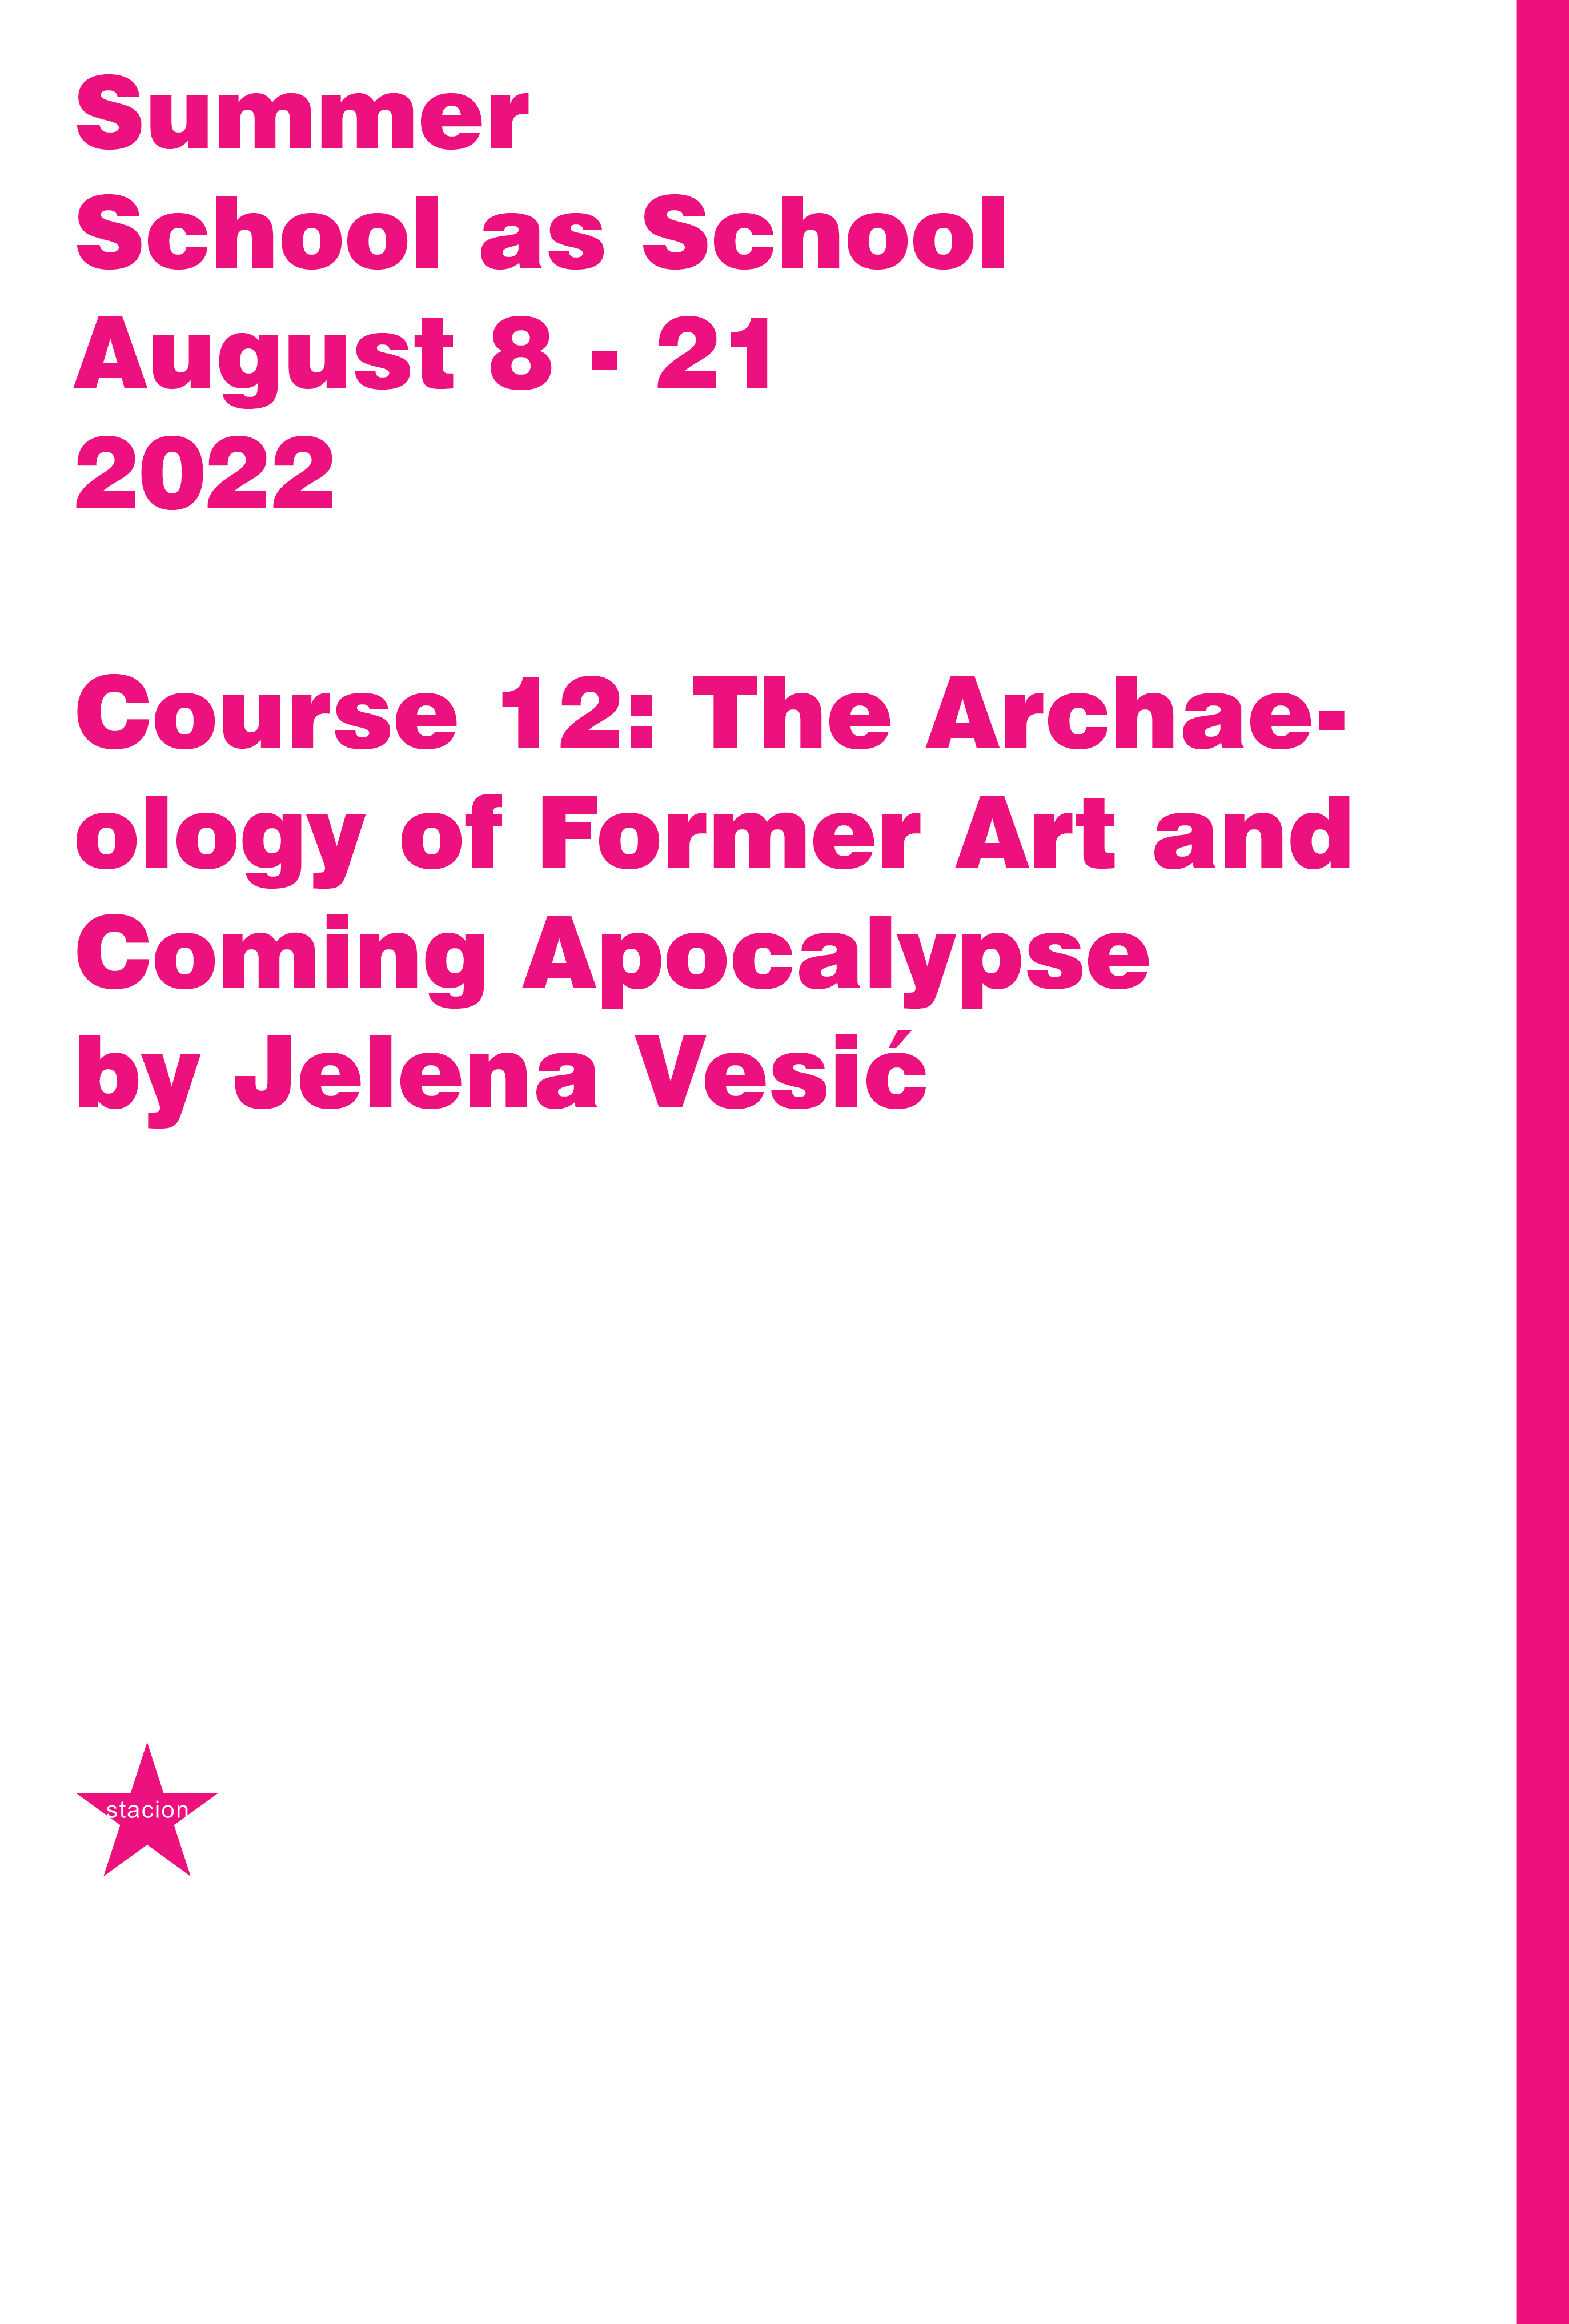 Course 12: Arkeologjia e artit të dikurshëm dhe apokalipsi i ardhshëm